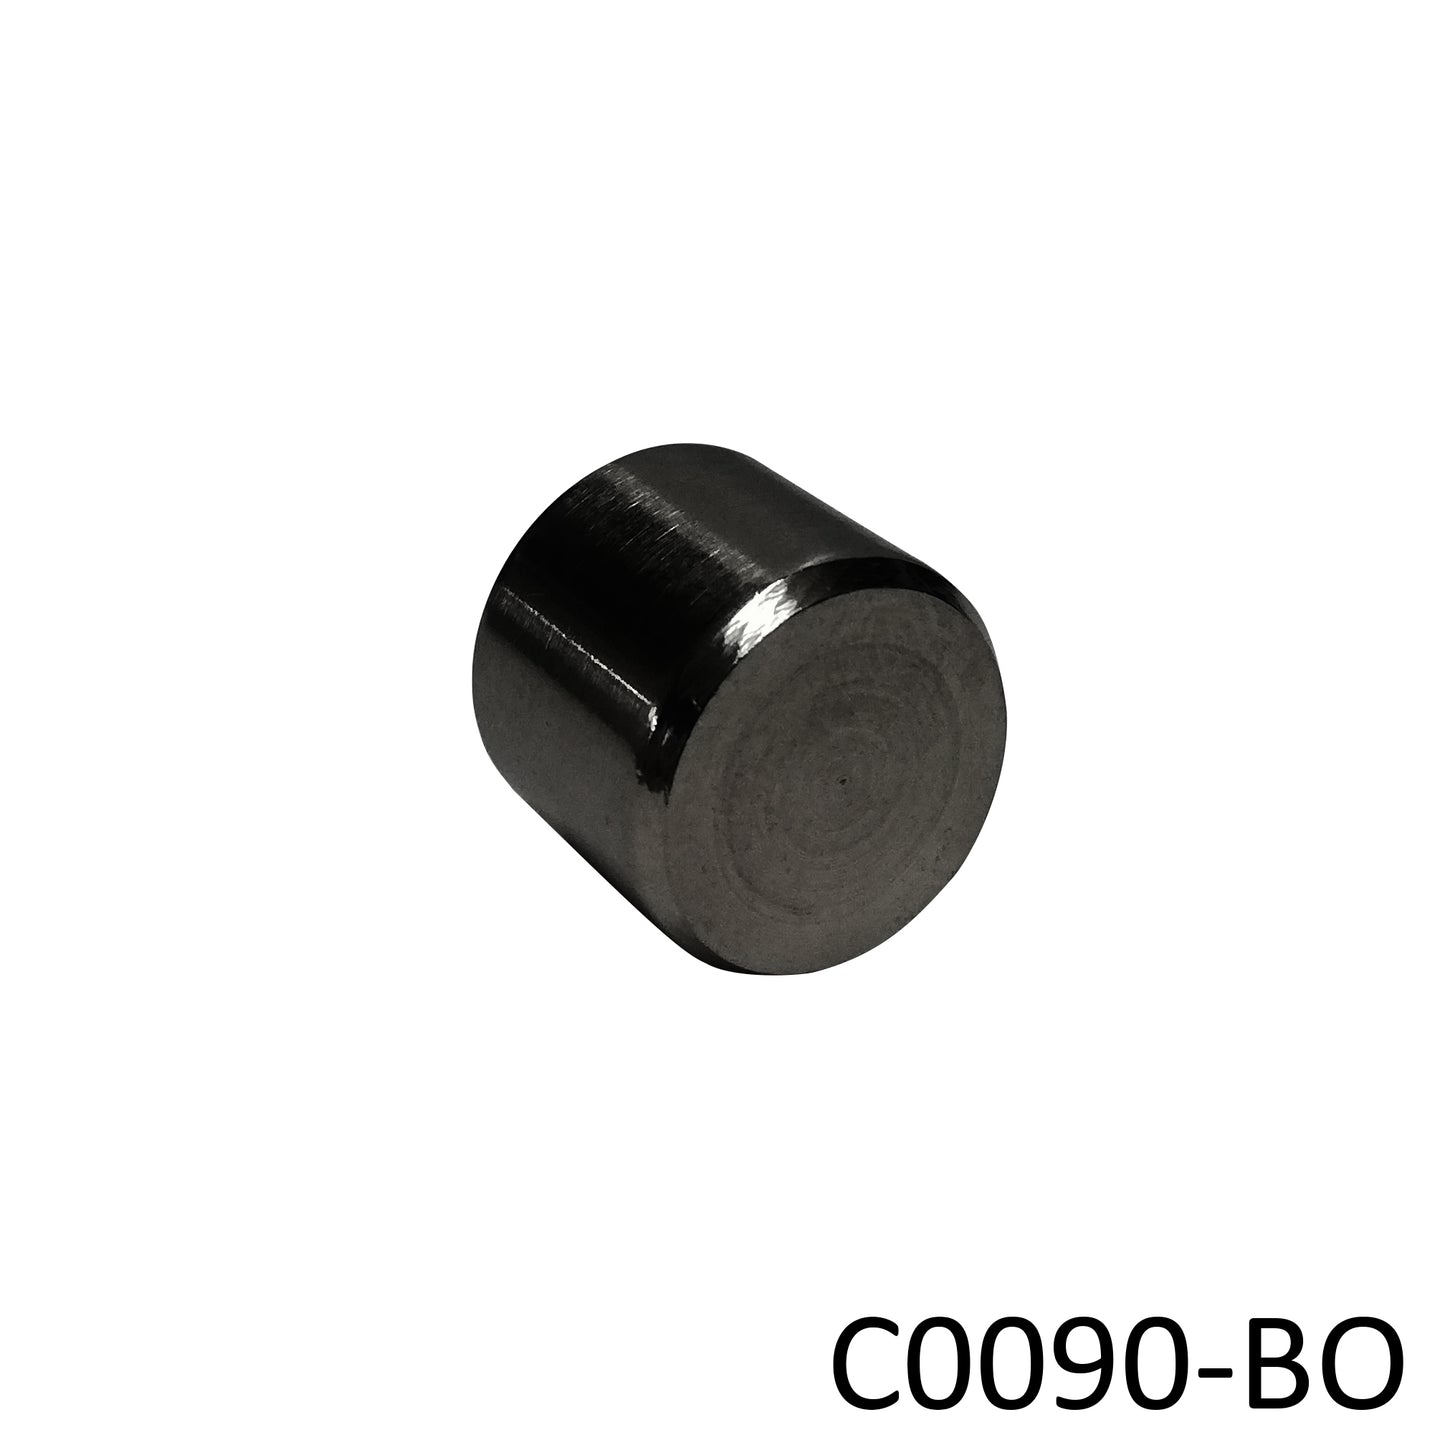 Black Oxide Round End Cap for Jam Nut (C0090-BO) - SHEMONICO